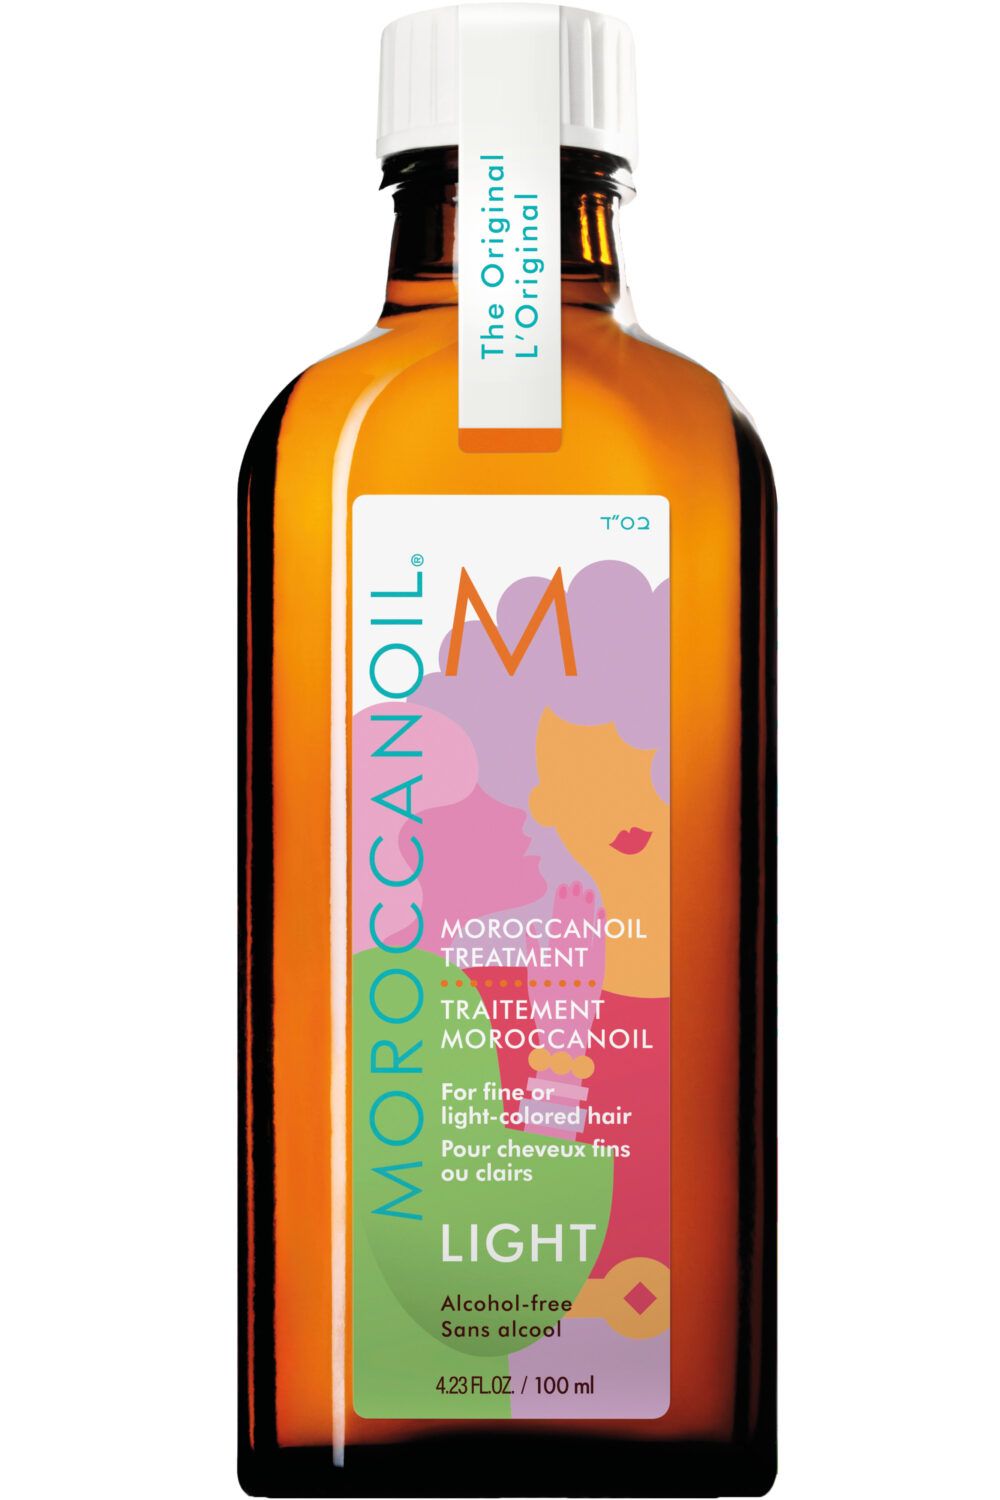 Moroccanoil - Soin huile Moroccanoil Light édition spéciale